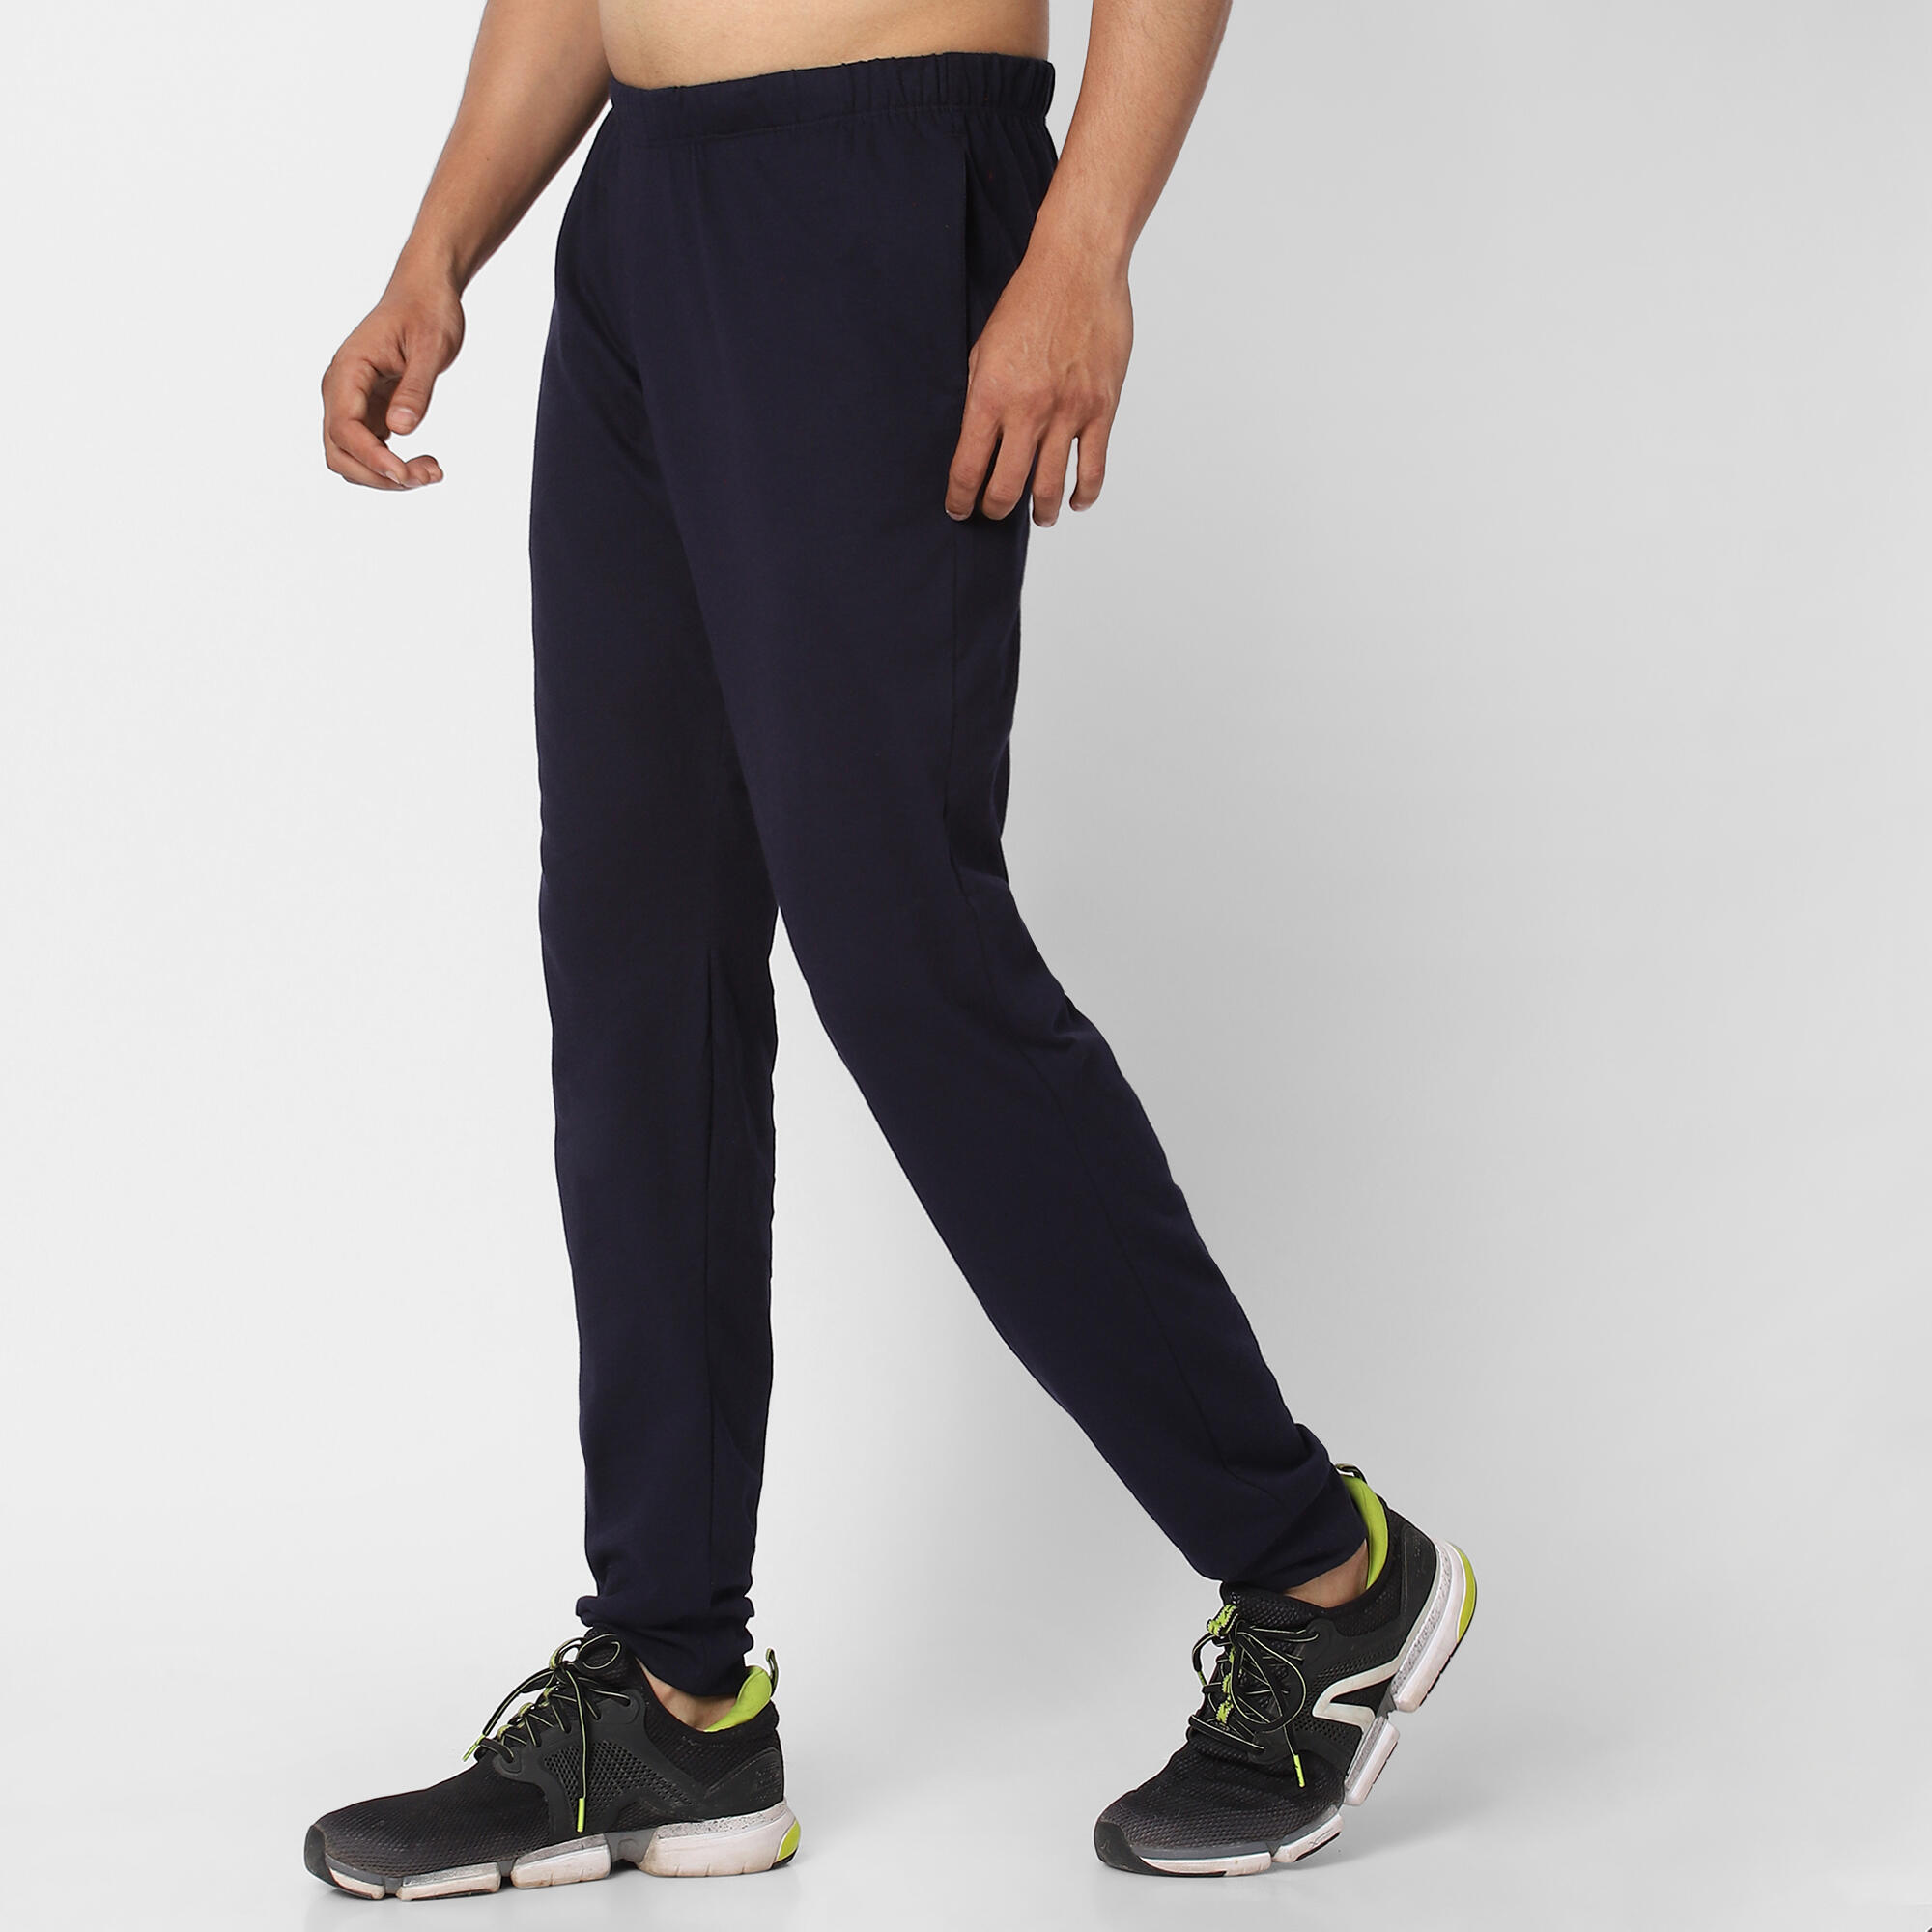 Buy MARK LOUIIS Track Pant for Men - Regular Fit Track Pants with Unique  Design Online - Baazaar Online